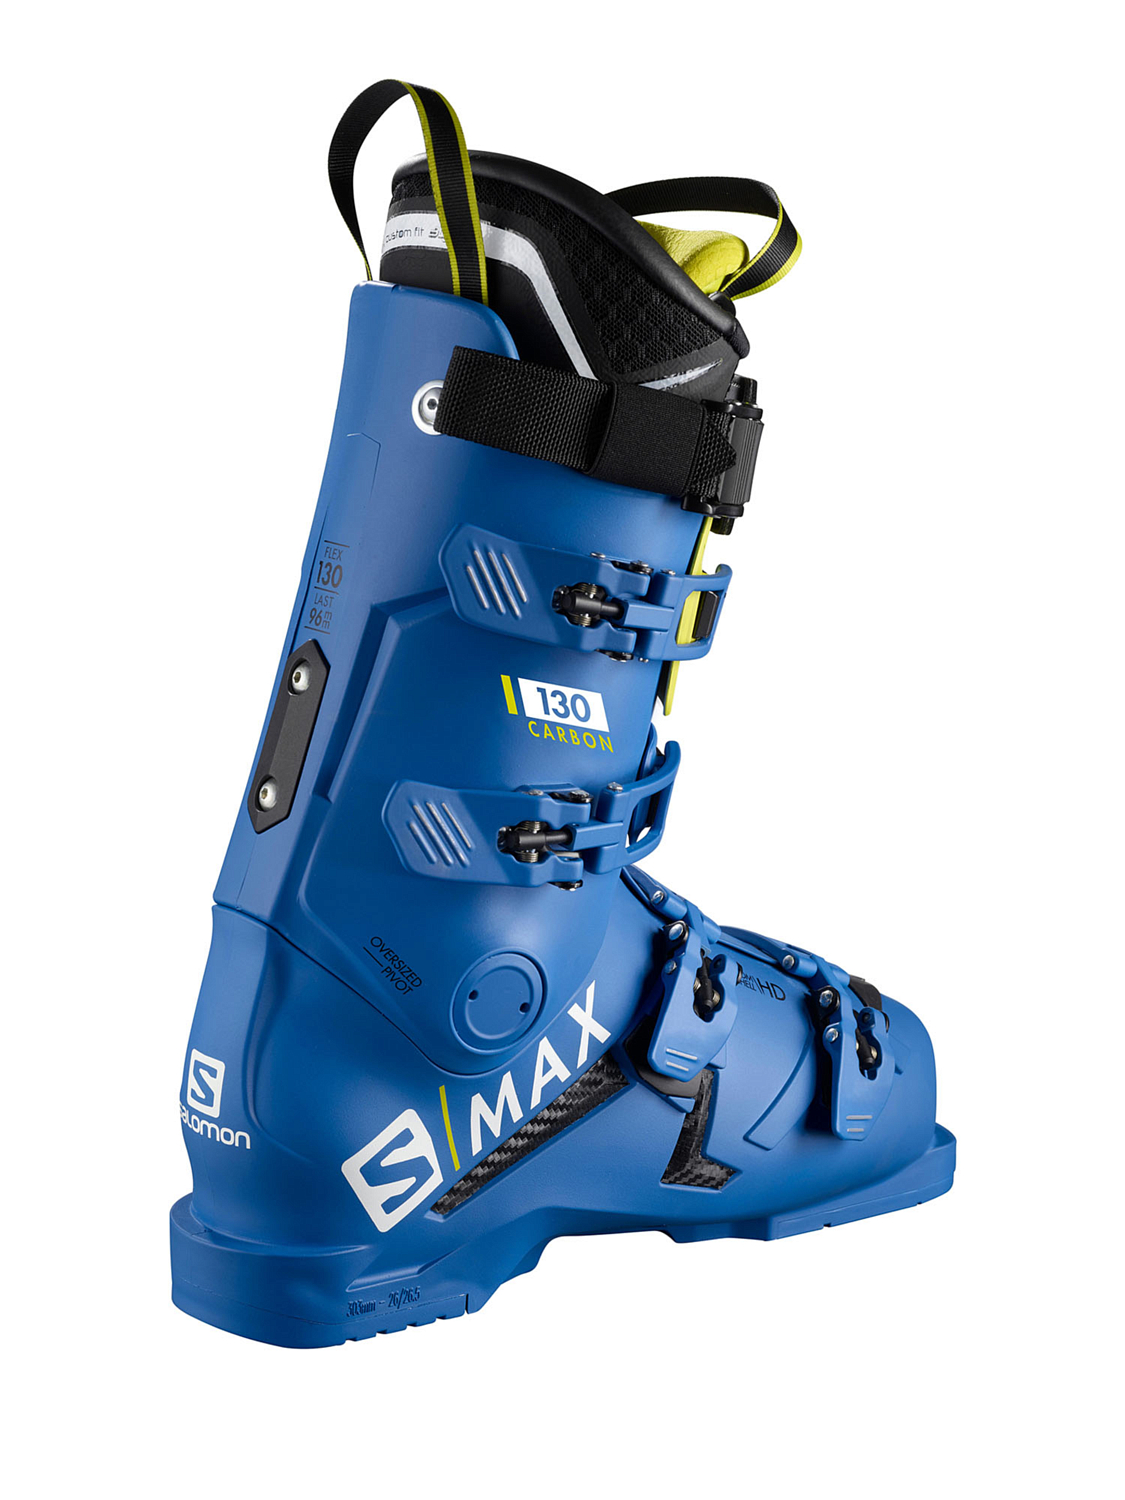 Горнолыжные ботинки SALOMON S/Max 130 Carbon Race Blue F04/Acid Green/Black